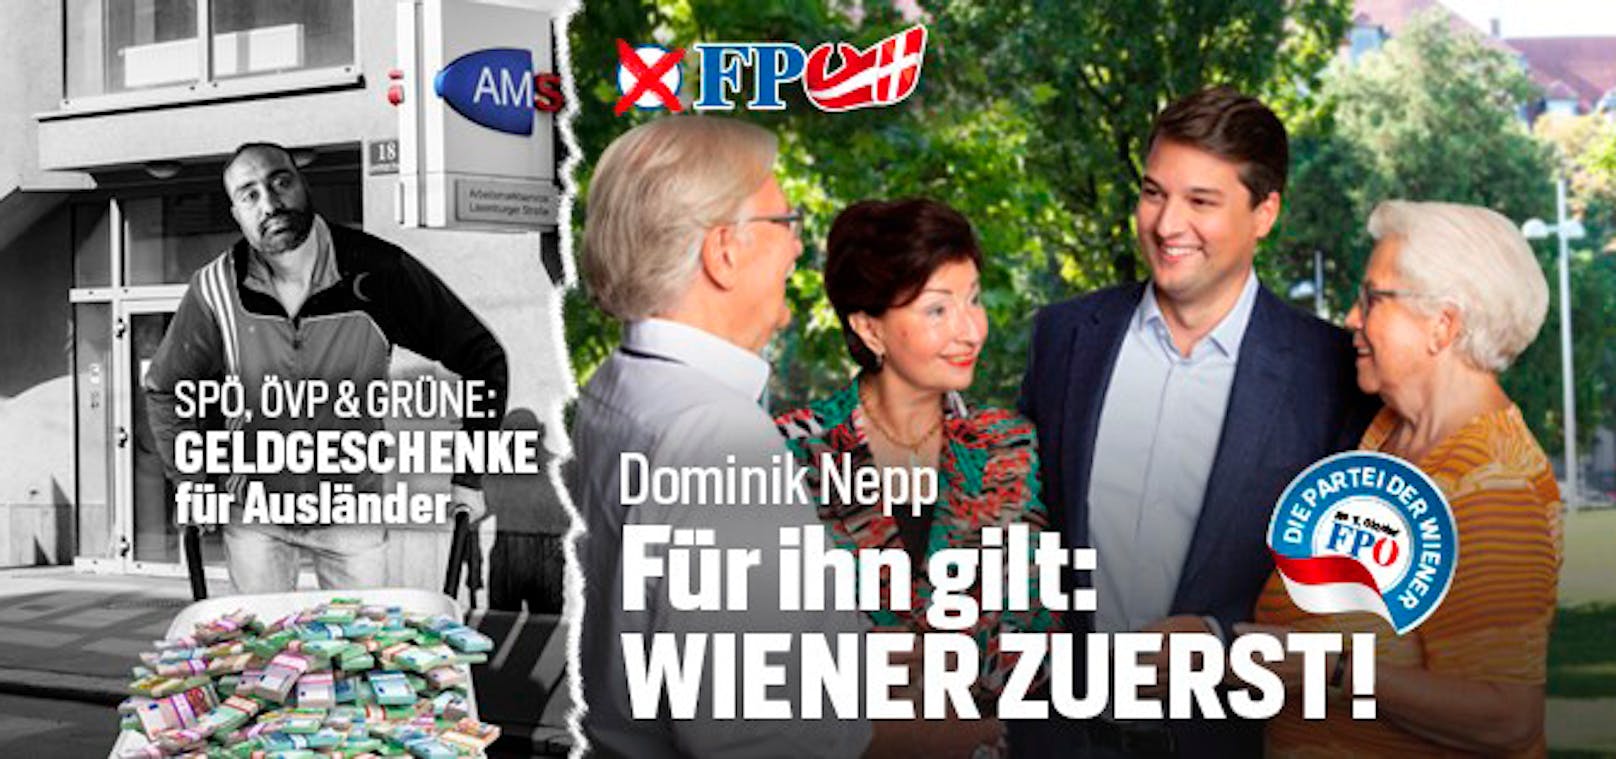 Dieses Sujet erregt die Gemüter: "Geldgeschenke für Ausländer" samt AMS-Logo auf einem Plakat der FPÖ Wien (13. September 2020)